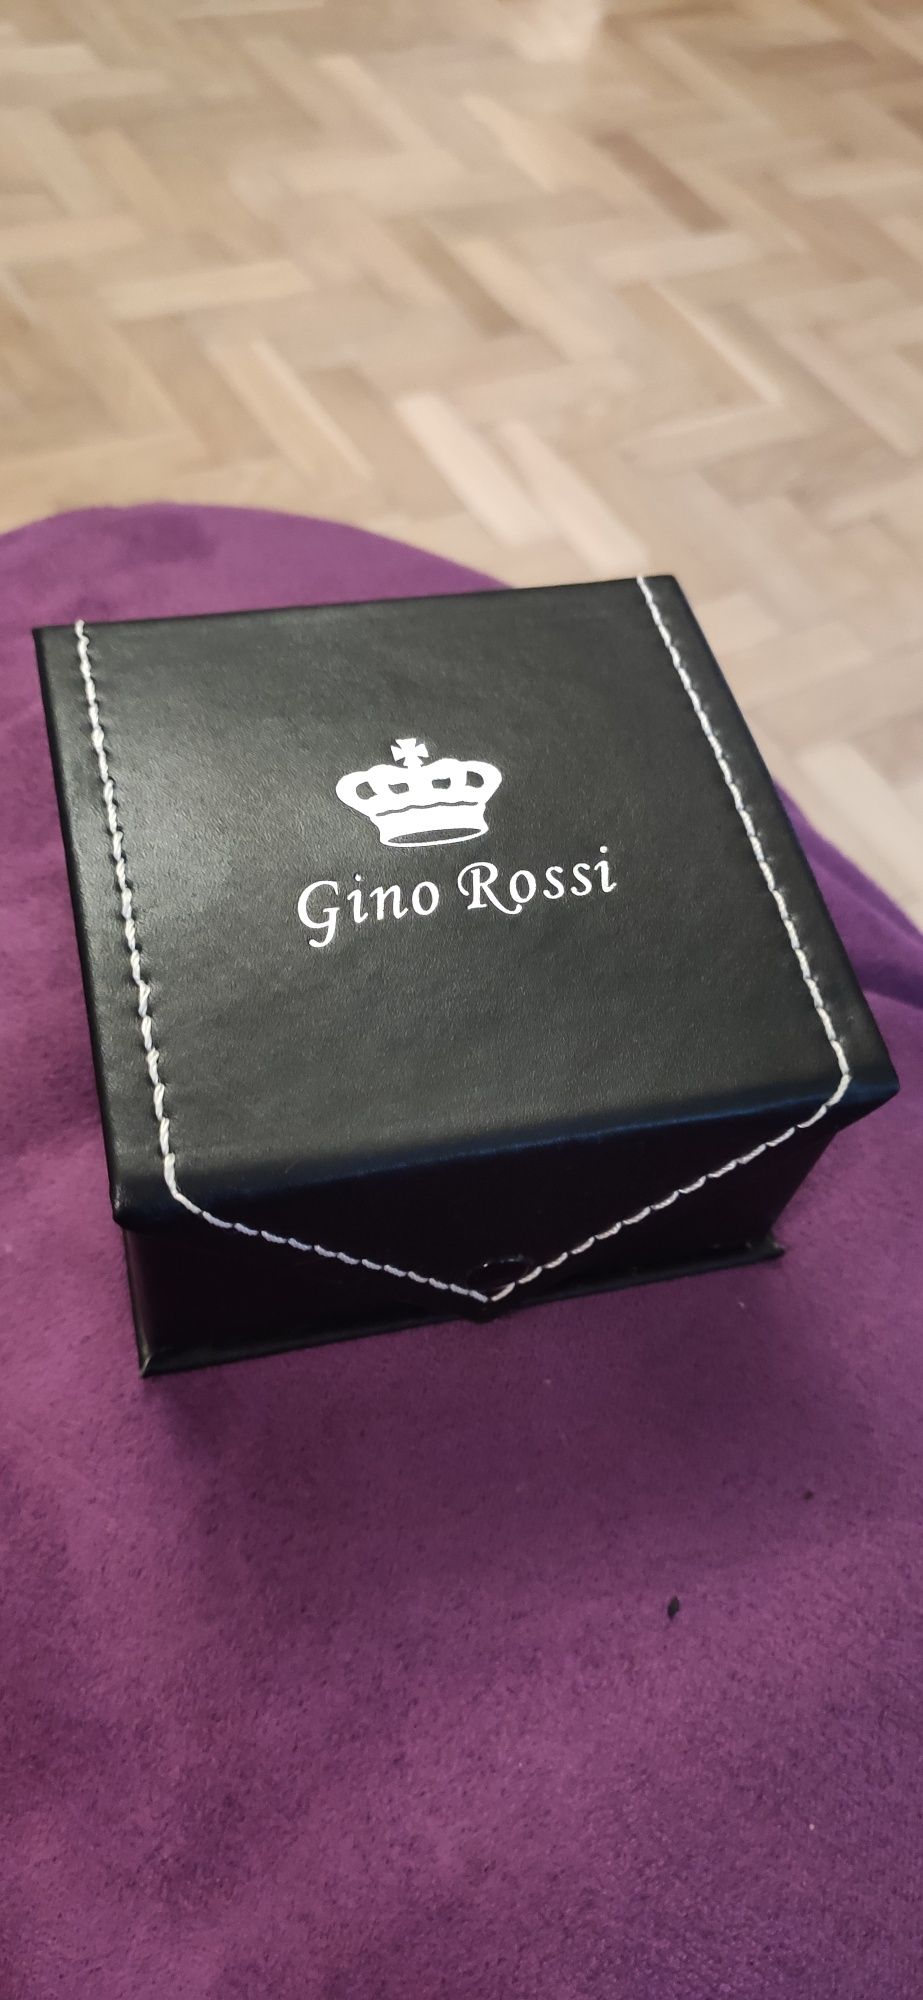 Pudełko ekspozytor na zegarek Gino Rossi